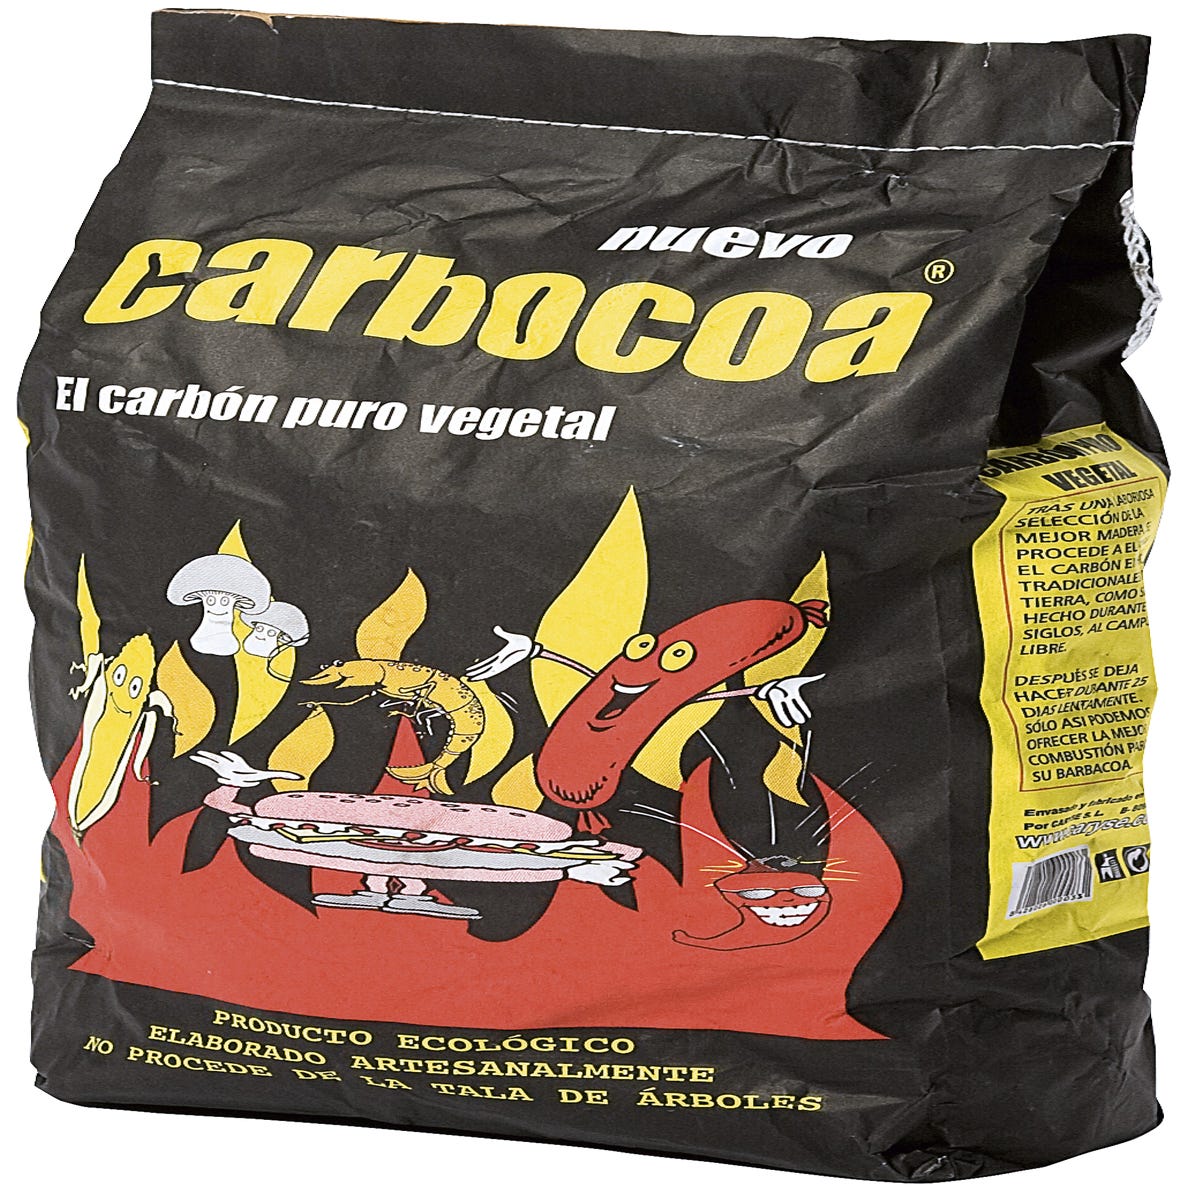 Saco de Carbón Profesional Barbacoa - carbosur